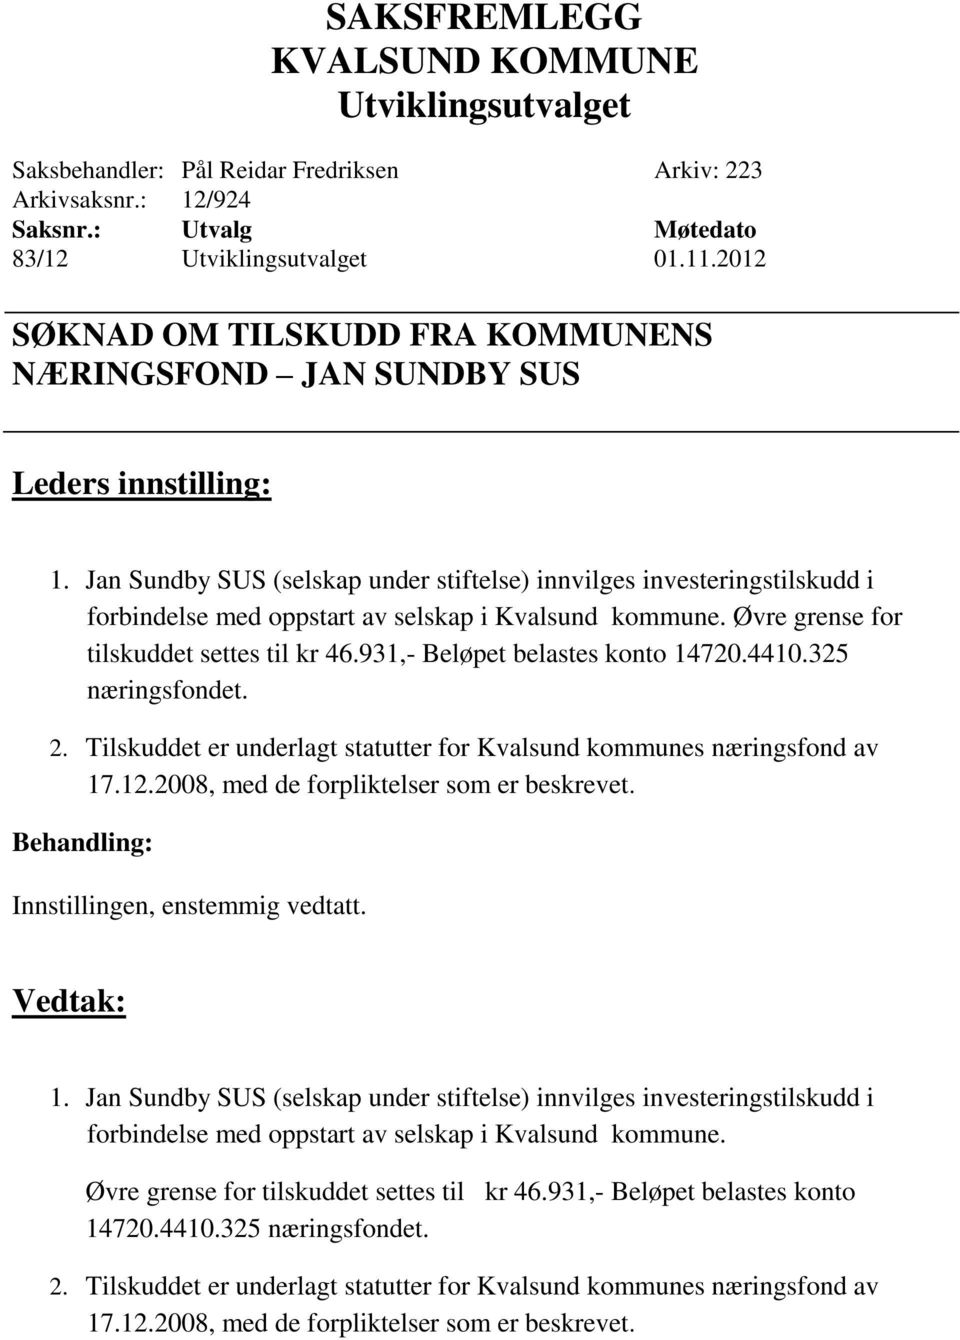 931,- Beløpet belastes konto 14720.4410.325 næringsfondet. 2. Tilskuddet er underlagt statutter for Kvalsund kommunes næringsfond av 17.12.2008, med de forpliktelser som er beskrevet. 1. 931,- Beløpet belastes konto 14720.